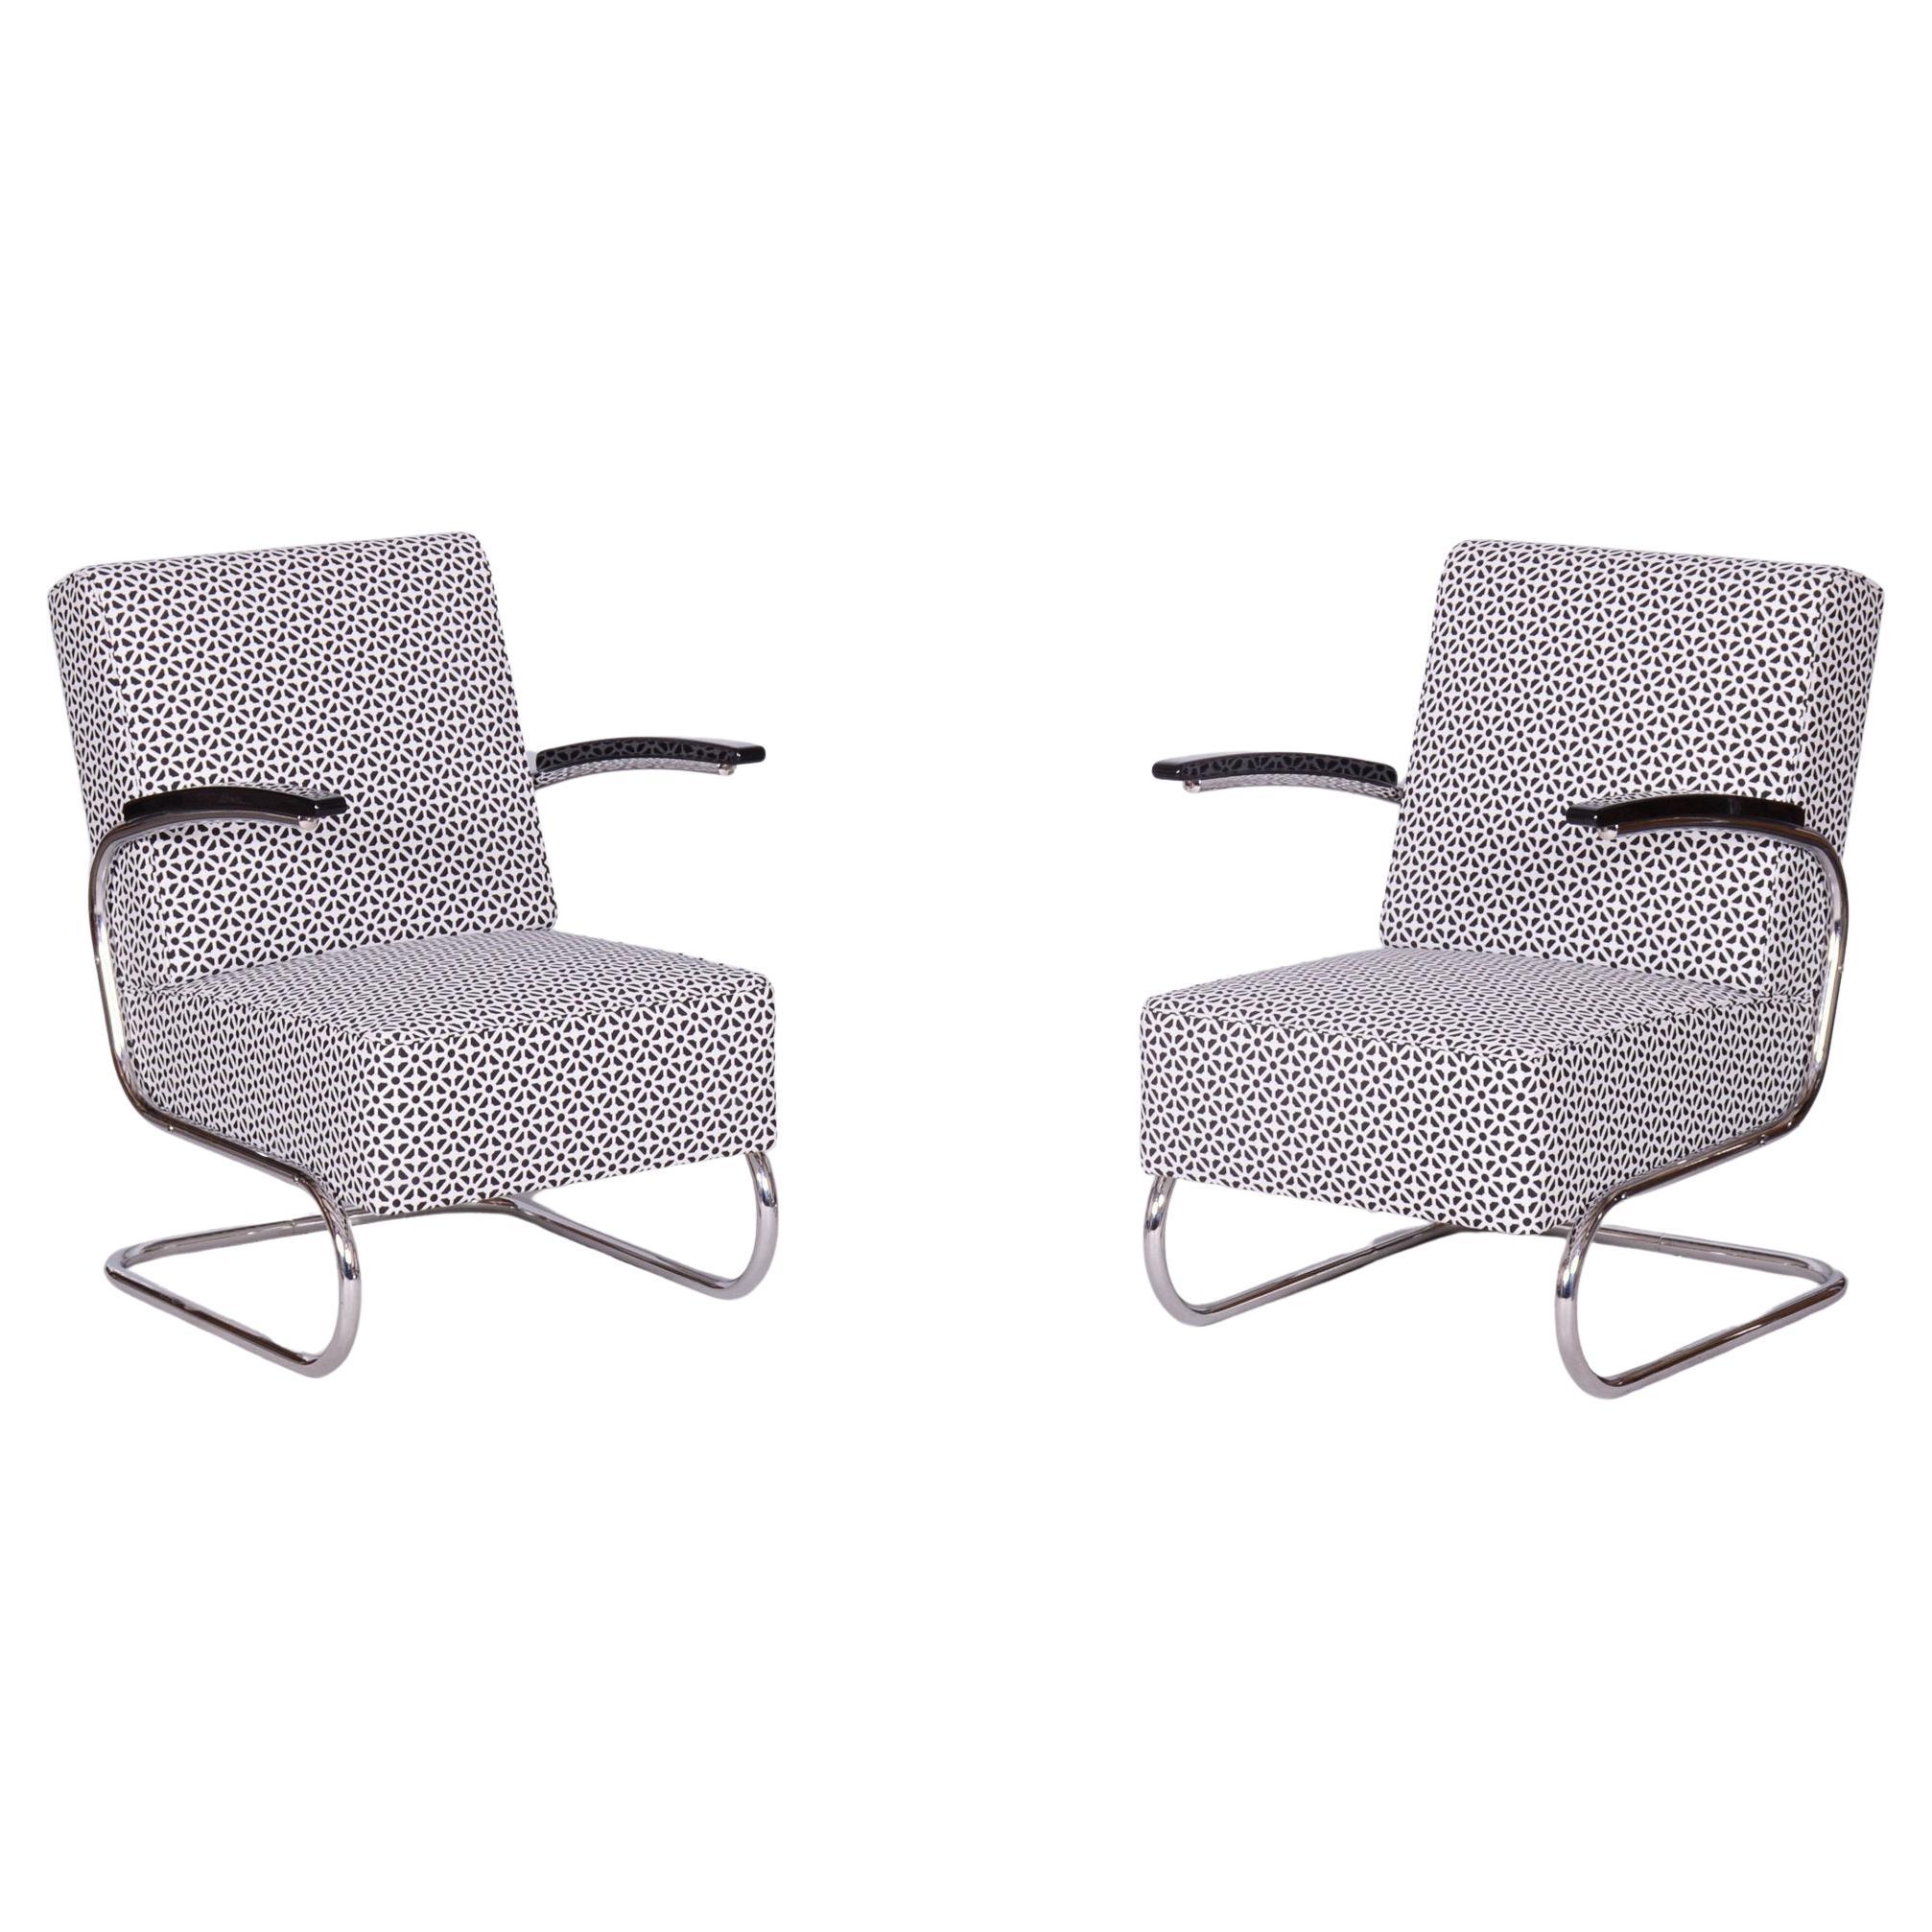 Ensemble de deux fauteuils Bauhaus restaurés, par Mücke & Melder, chrome, tchèque, années 1930